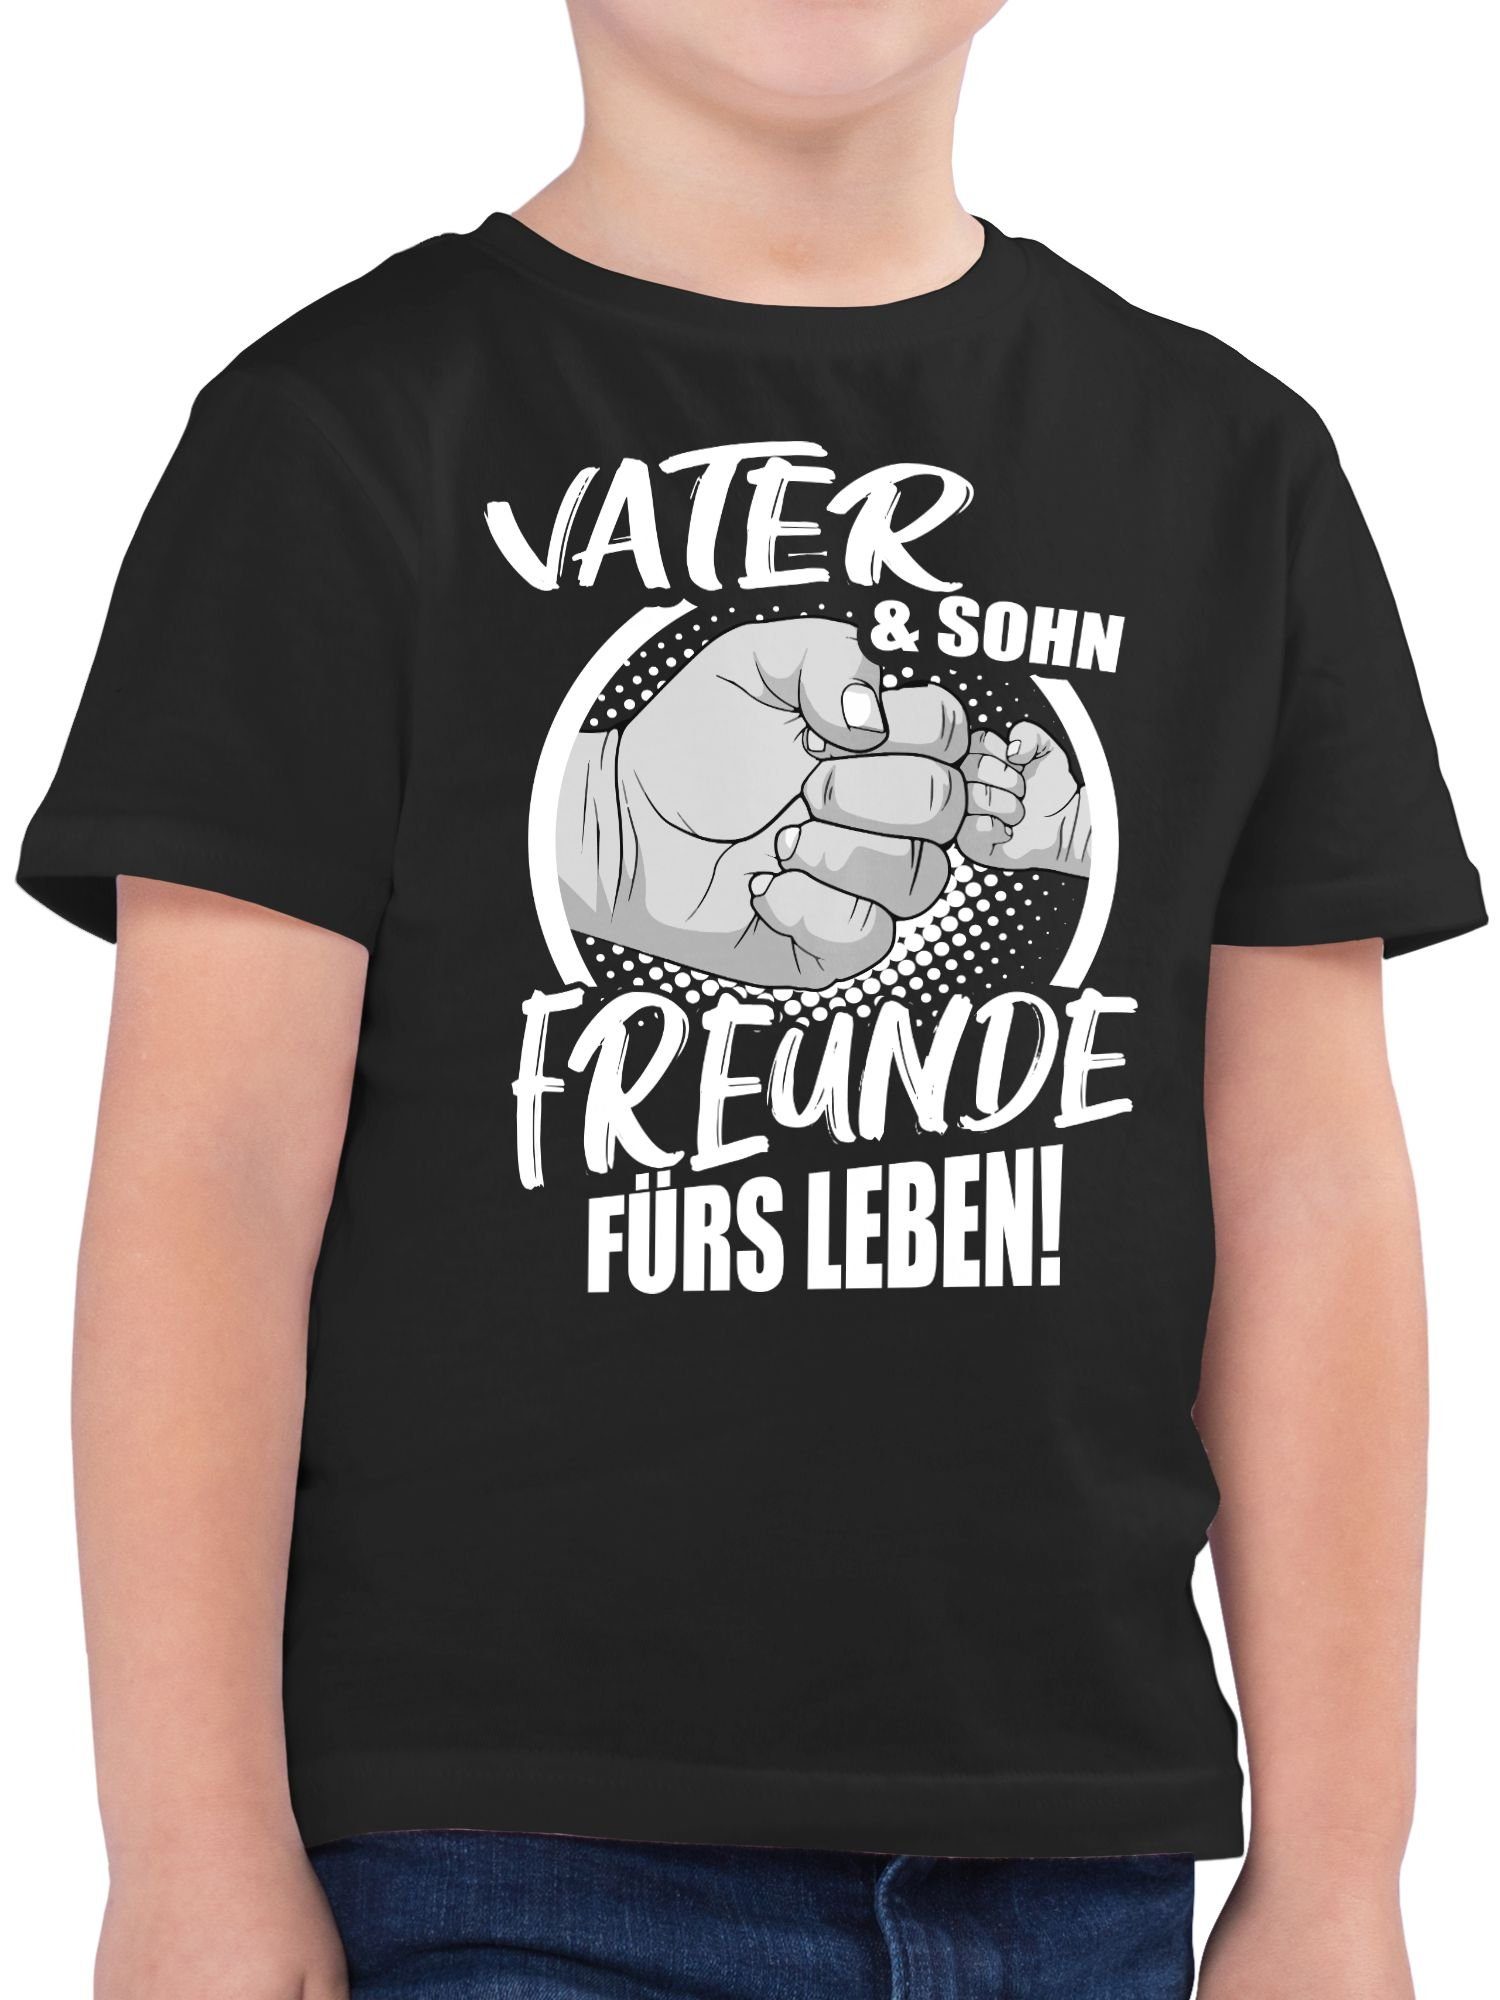 Vater Leben! Familie T-Shirt Sohn & fürs Partner-Look Schwarz 1 Shirtracer Freunde Kind